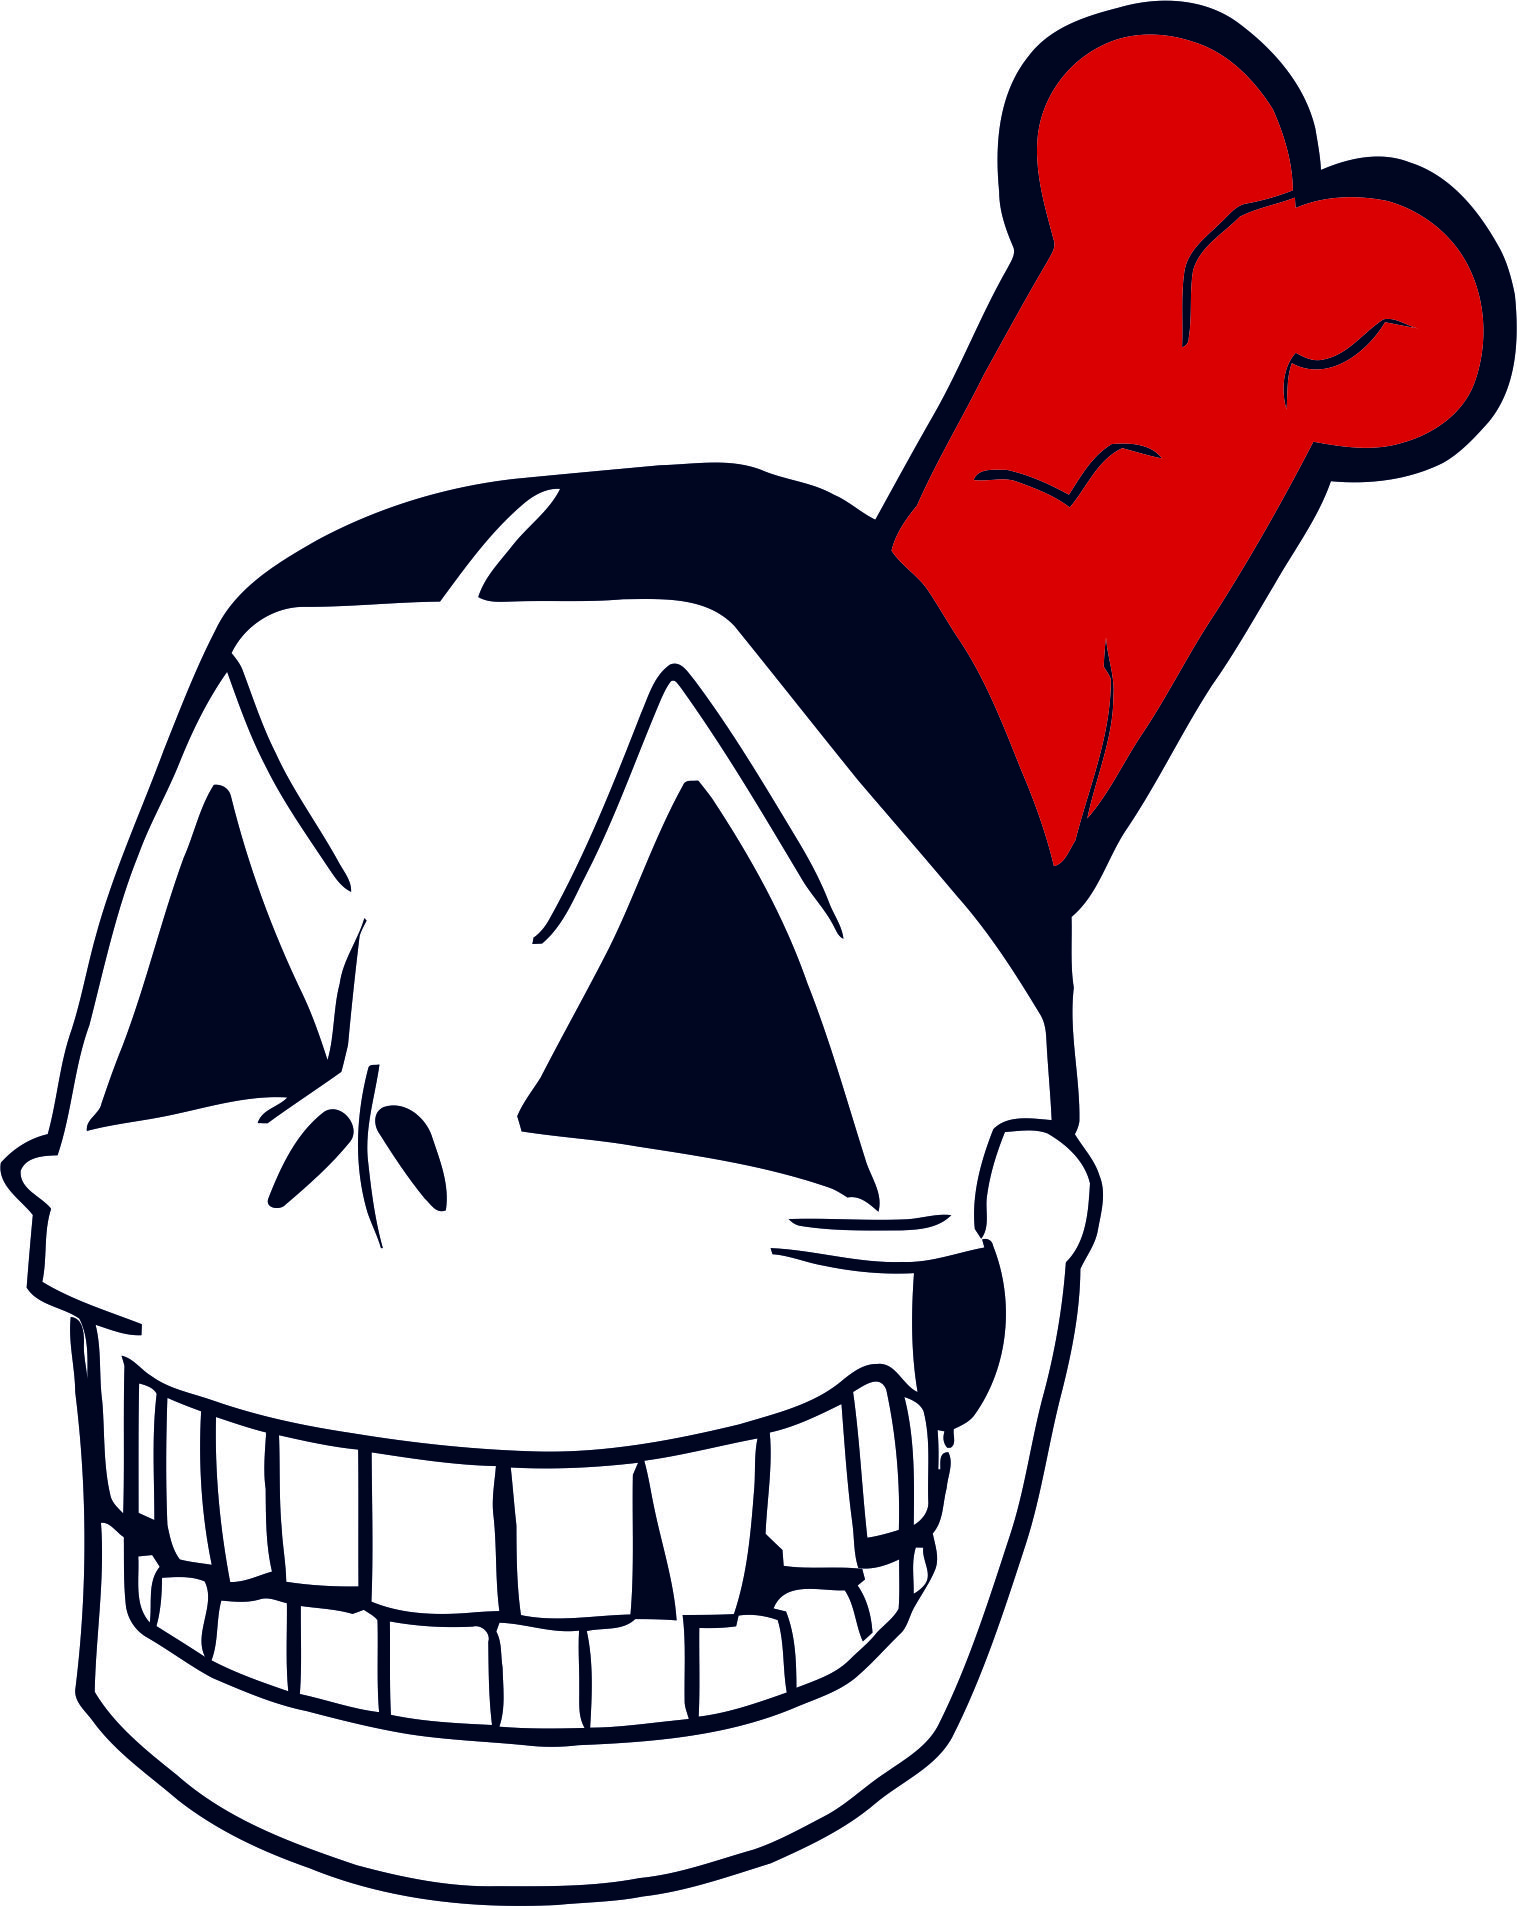 Cleveland Indians Skulls Logo iron on transfers